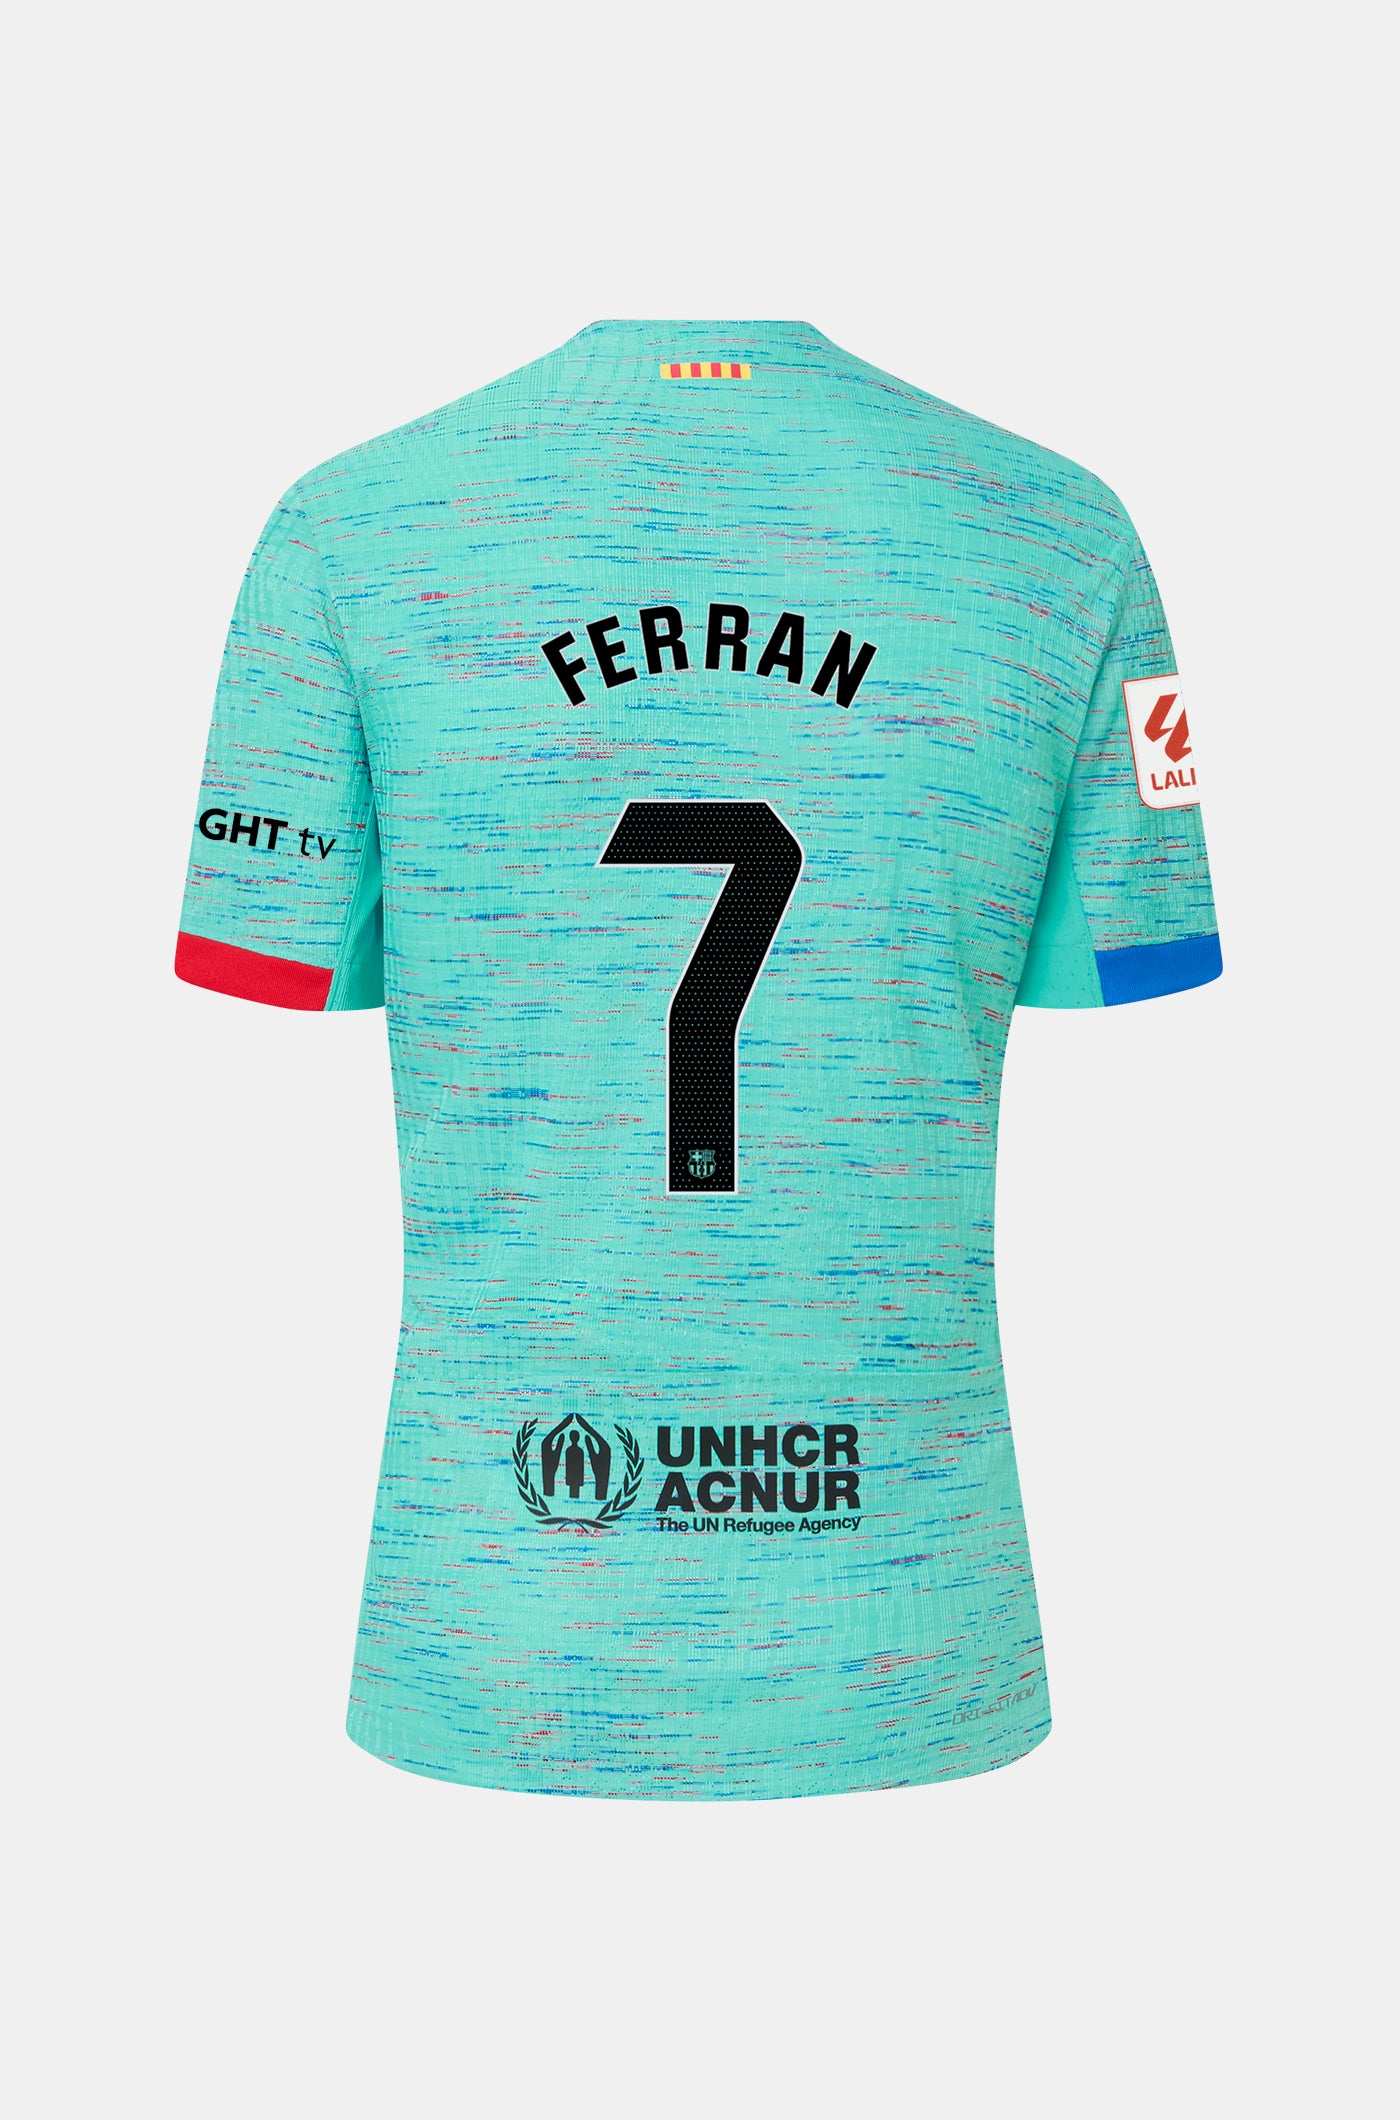 LFP FC Barcelona third shirt 23/24 - Women  - FERRAN